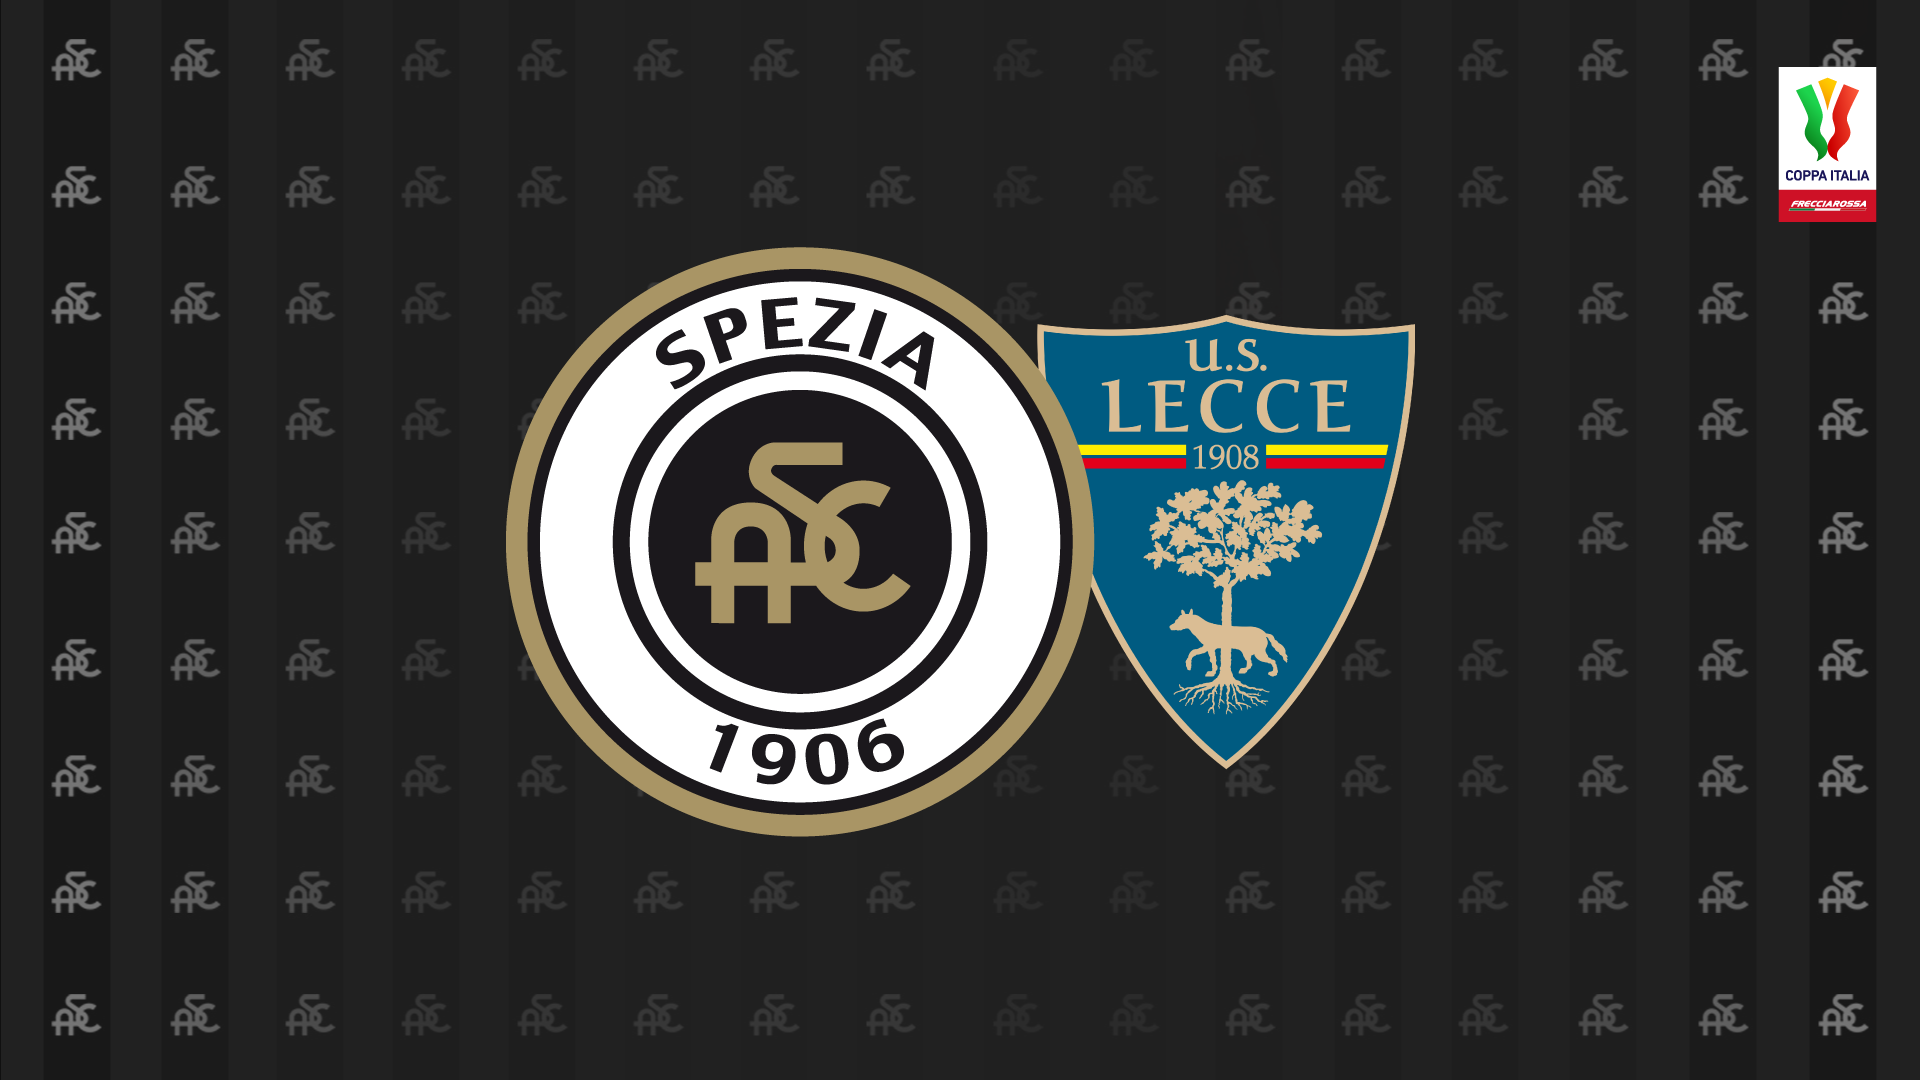 Spezia-Lecce: free sale from Monday 13